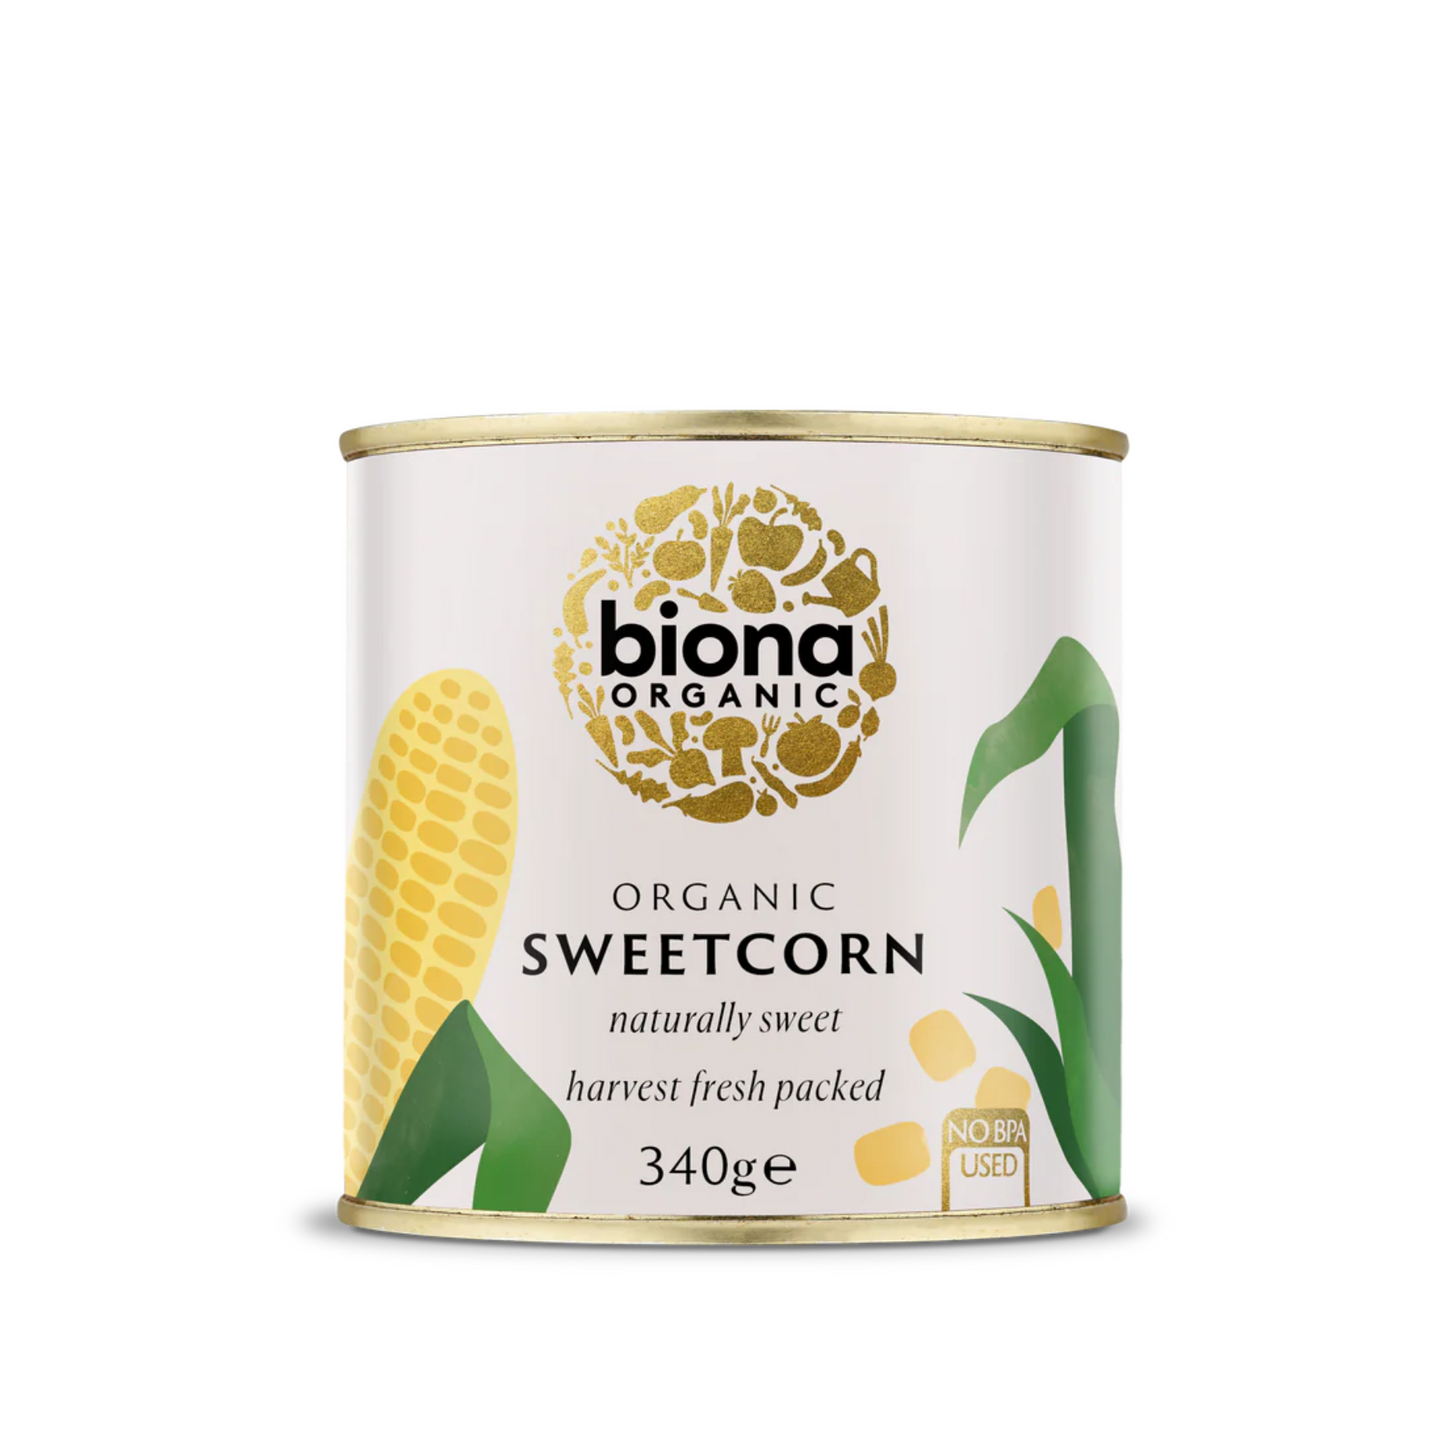 Biona Organic Sweetcorn 340g, Harvest Fresh Packed